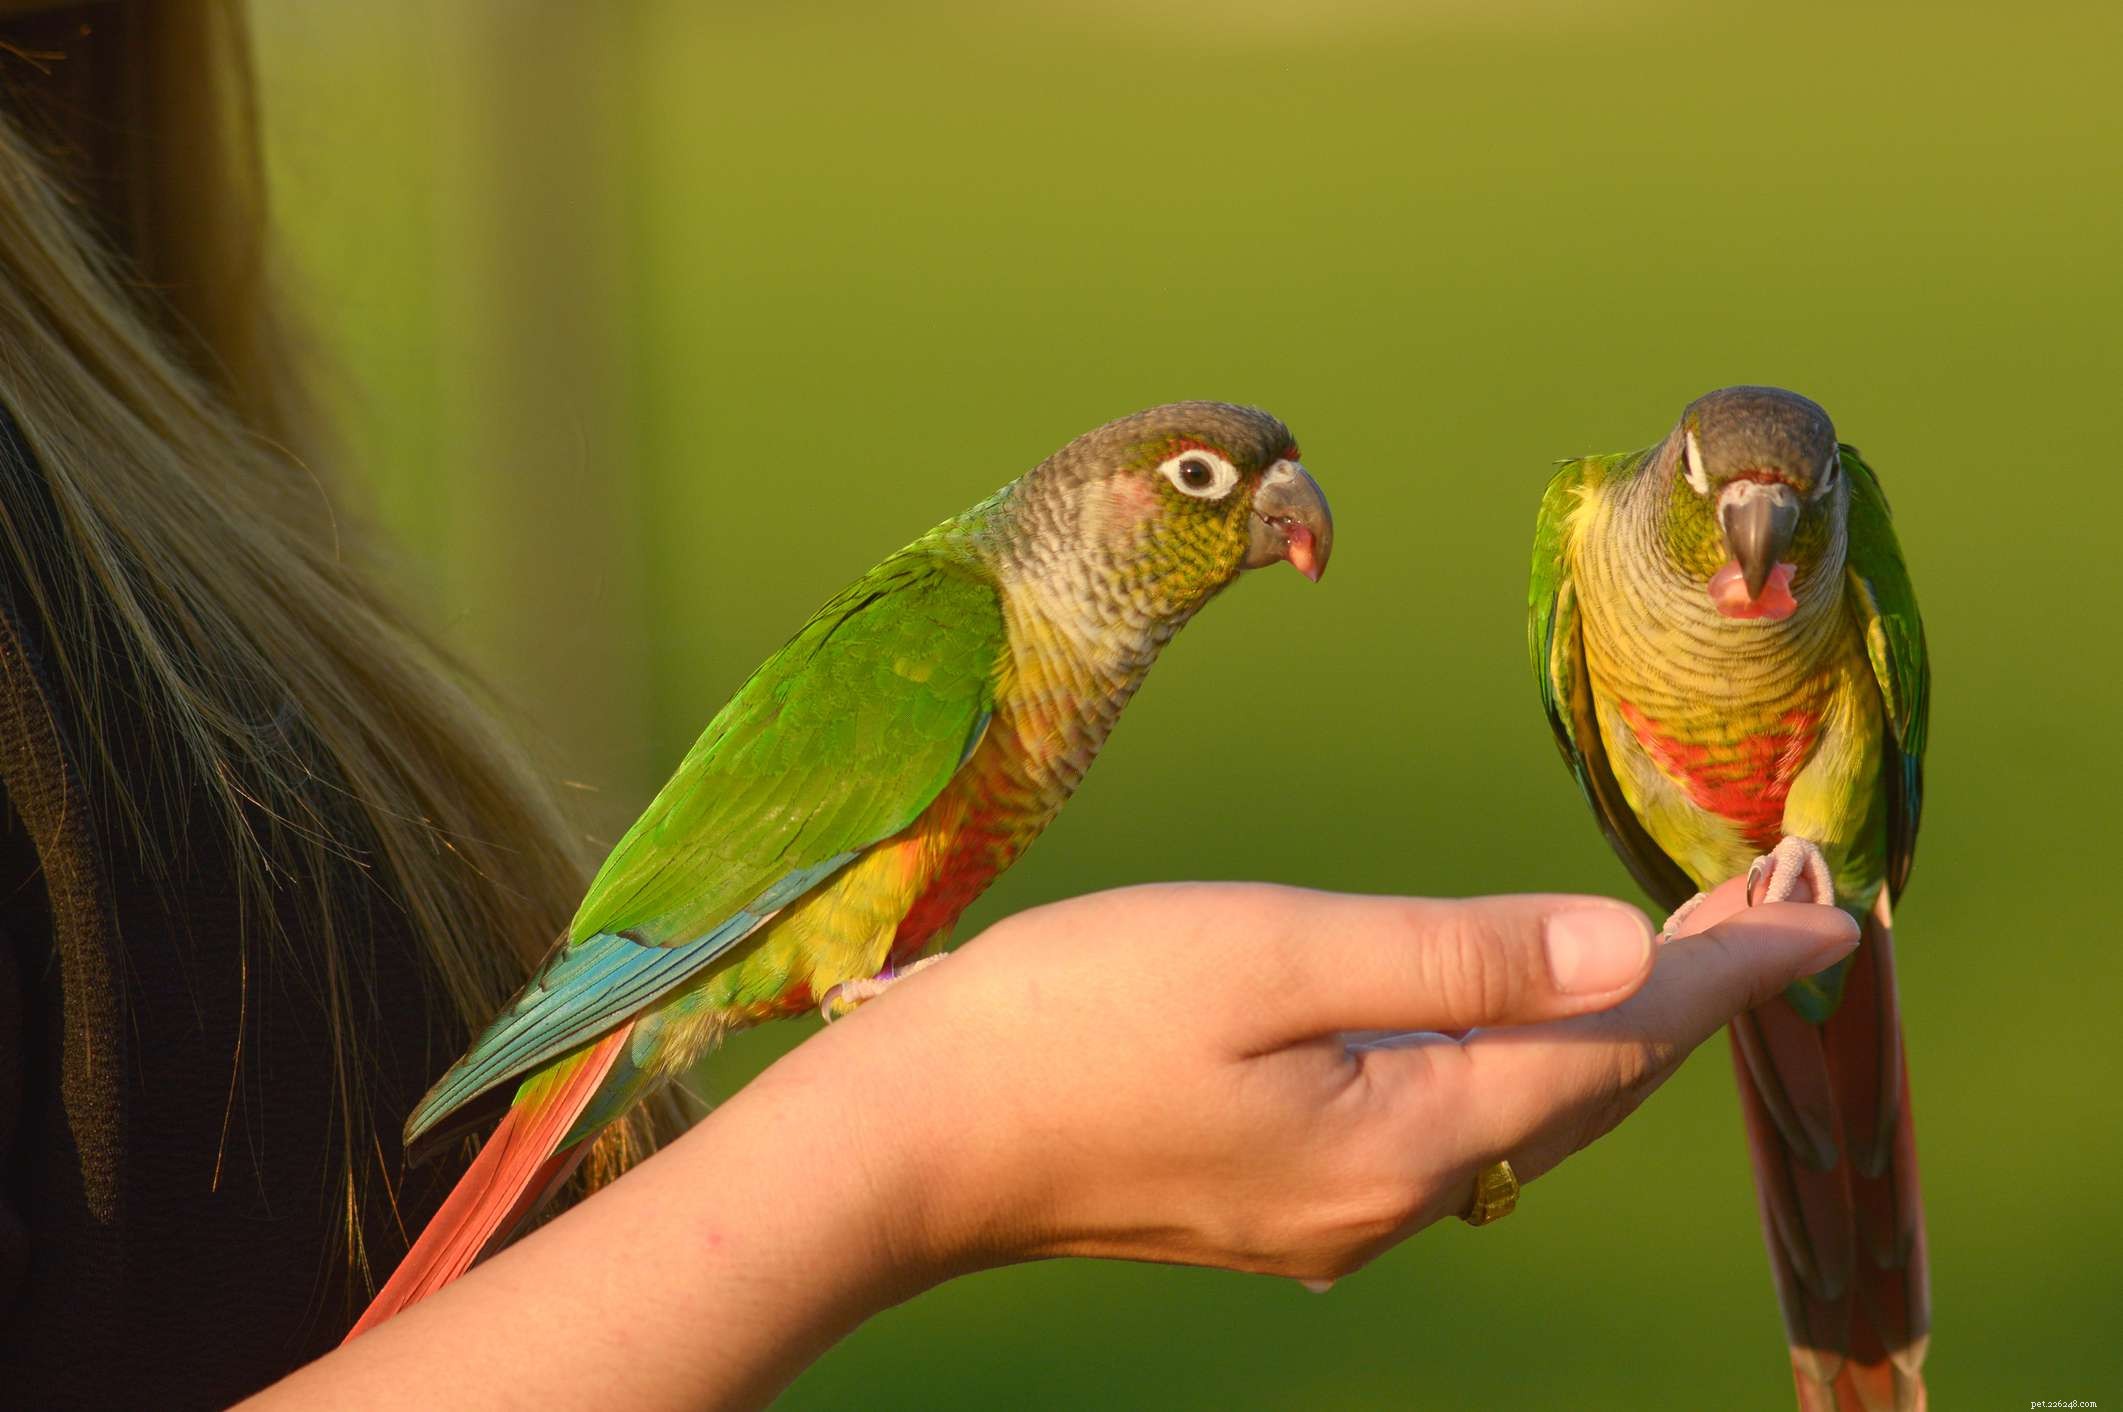 Comprar seu primeiro pássaro de estimação requer pesquisa e educação com antecedência